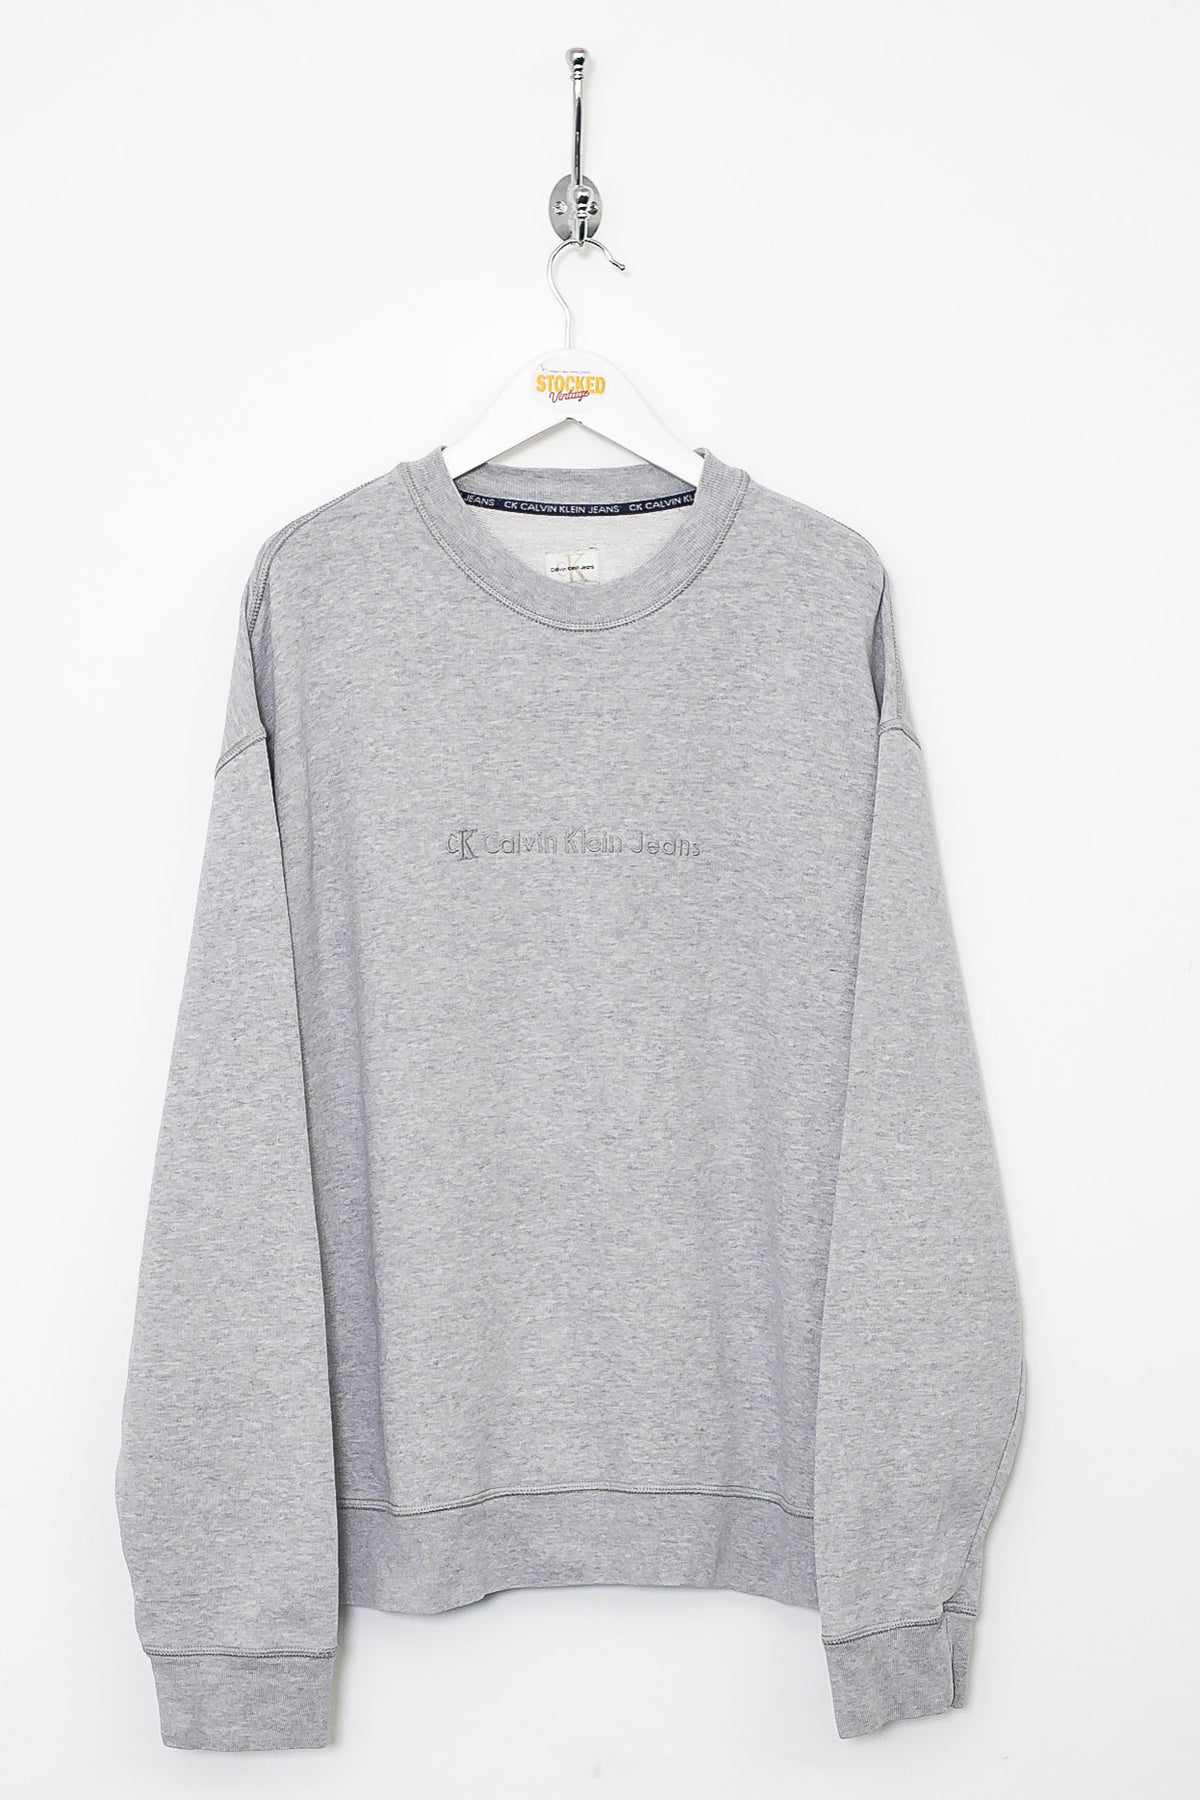 00s Calvin Klein Sweatshirt (L)